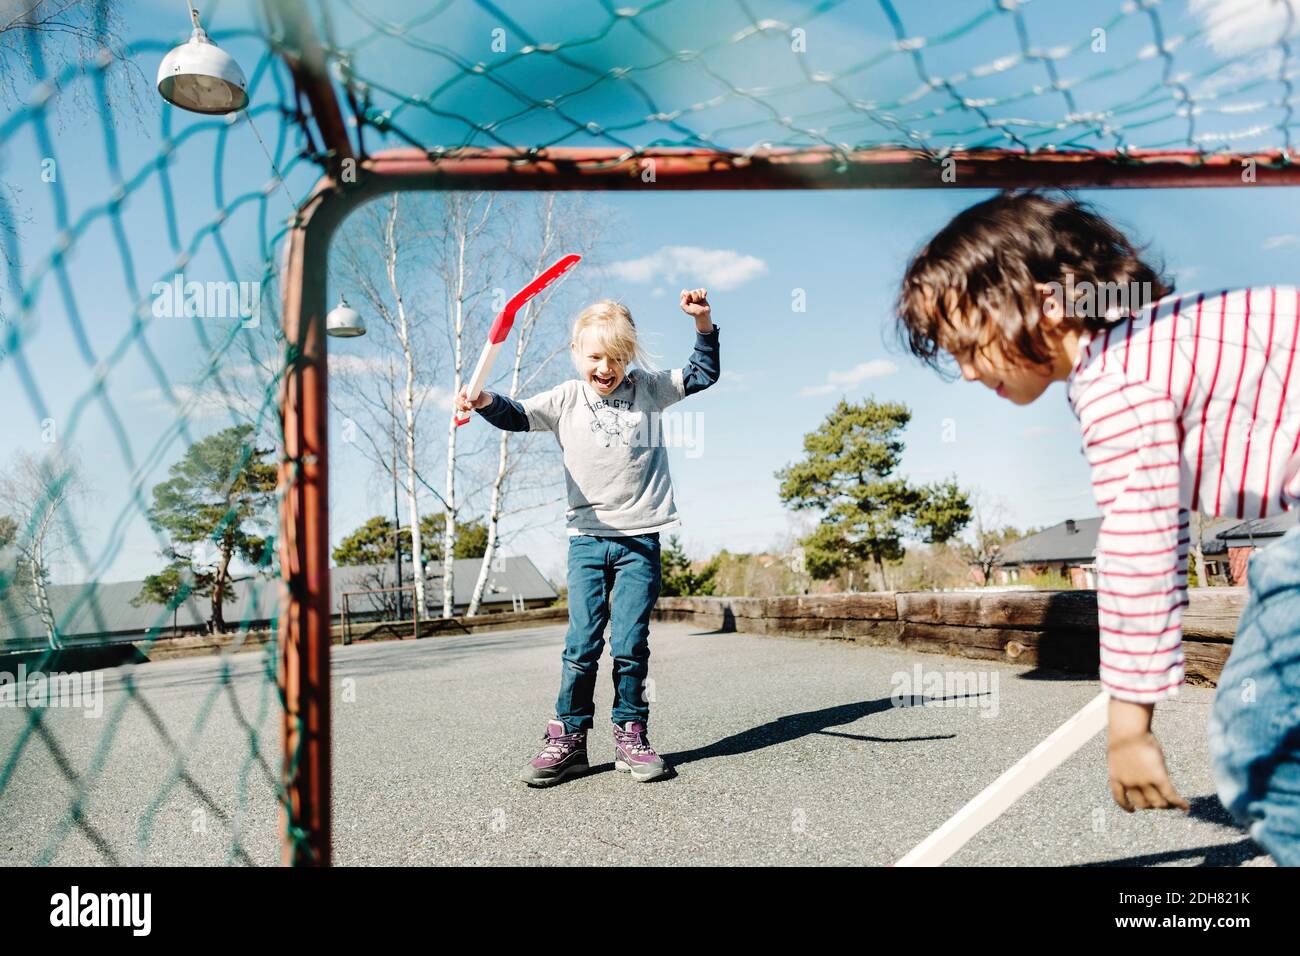 Emocionada chica gesturing mientras jugaba hockey con el niño en el patio Foto de stock